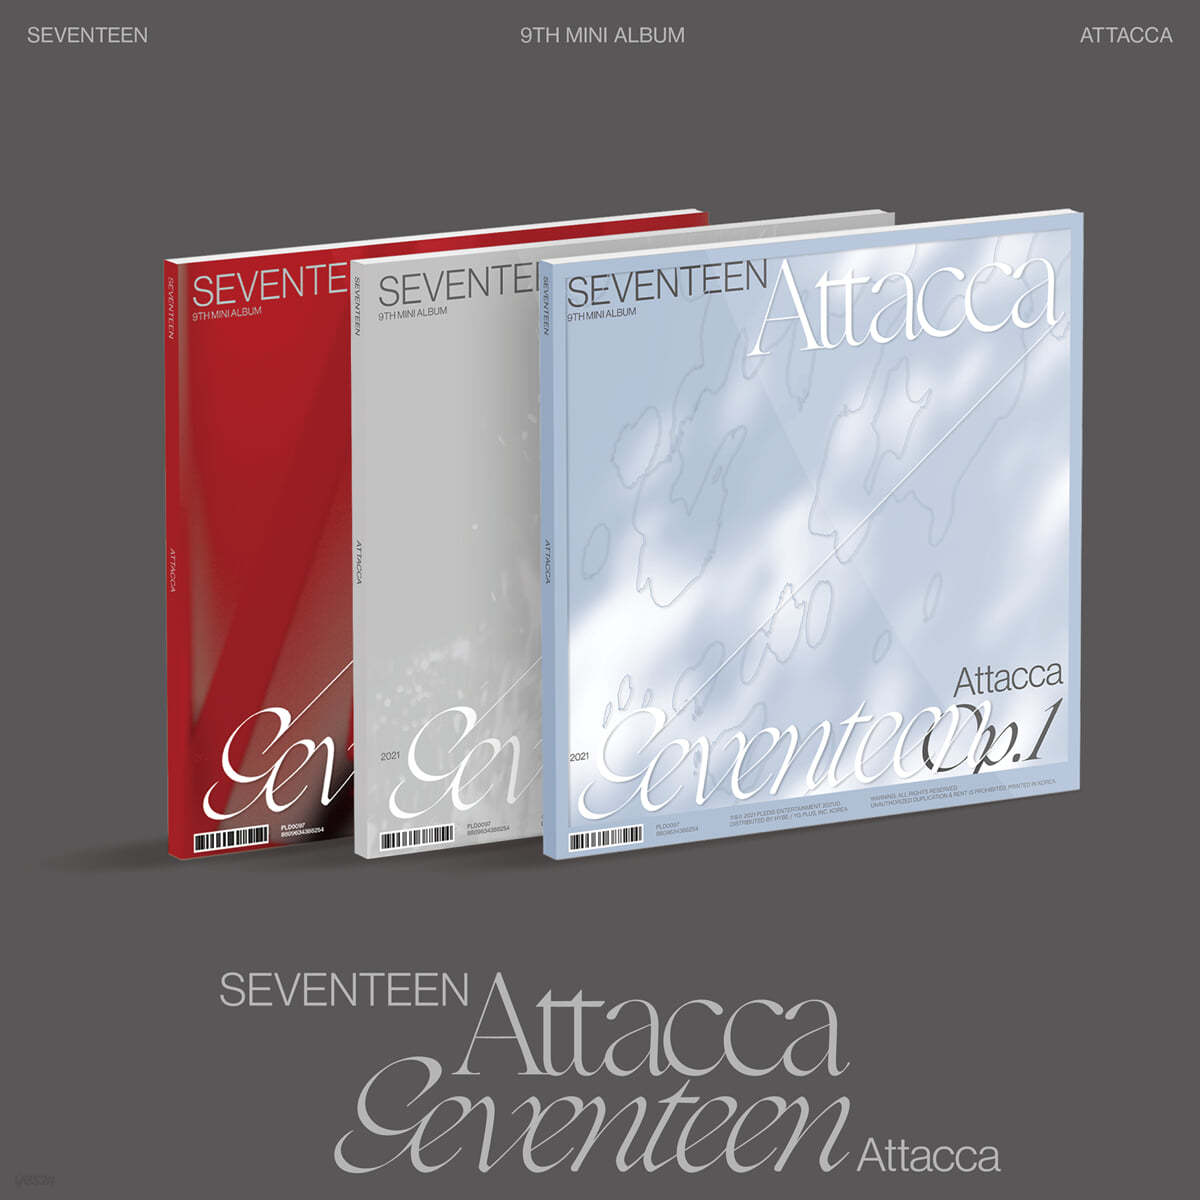 세븐틴 (Seventeen) - 미니앨범 9집 : Attacca [Op.1/Op.2/Op.3 ver. 중 랜덤발송]